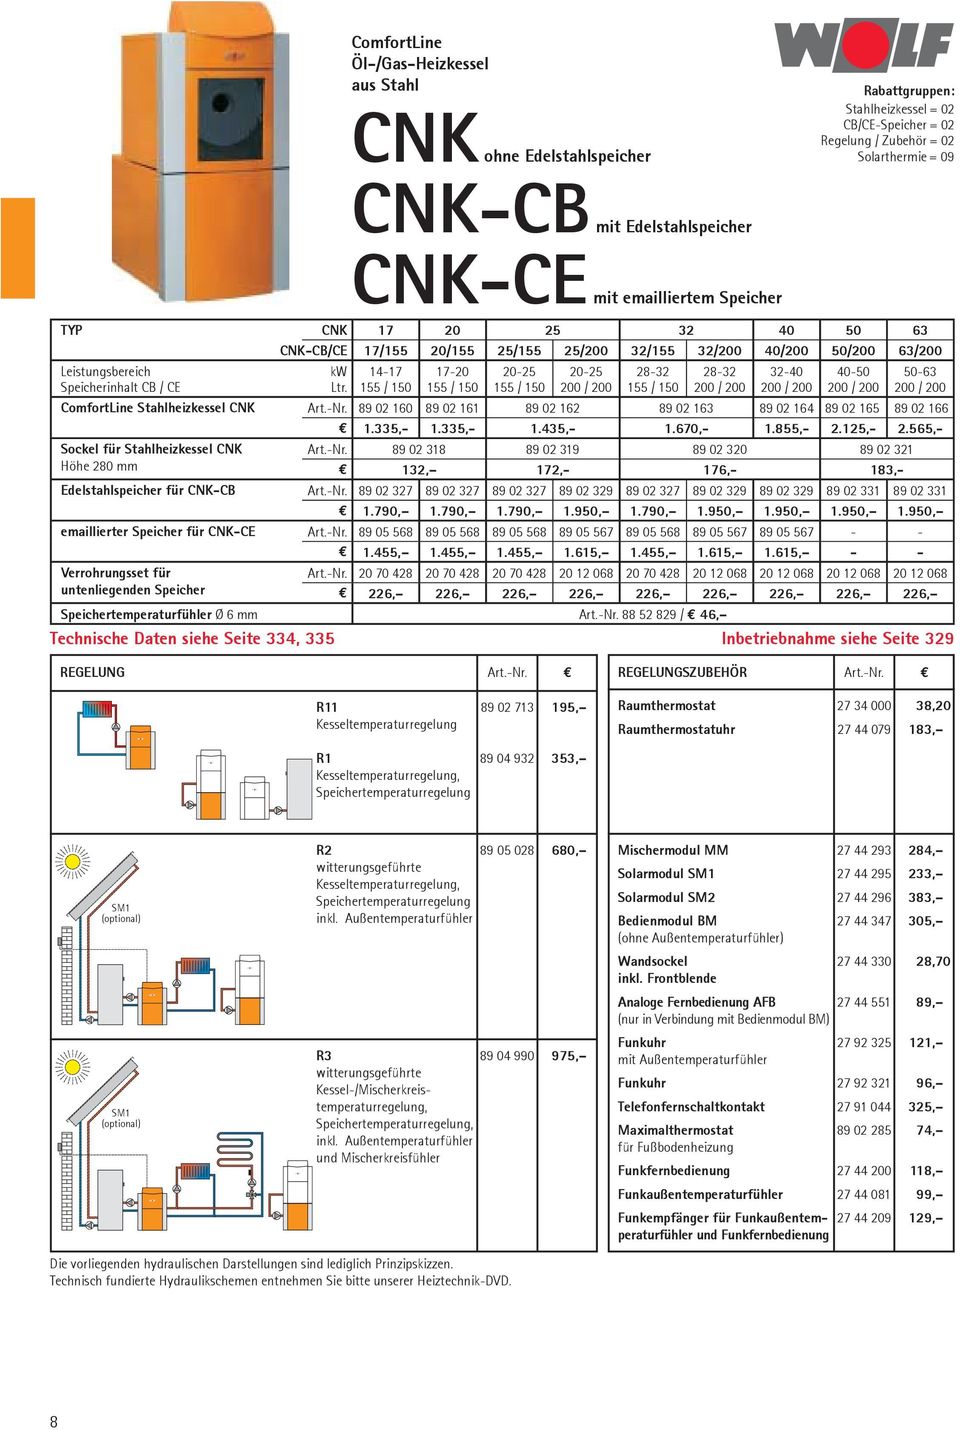 Speicherinhalt CB / CE Ltr. 155 / 150 155 / 150 155 / 150 200 / 200 155 / 150 200 / 200 200 / 200 200 / 200 200 / 200 ComfortLine Stahlheizkessel CNK Art.-Nr.